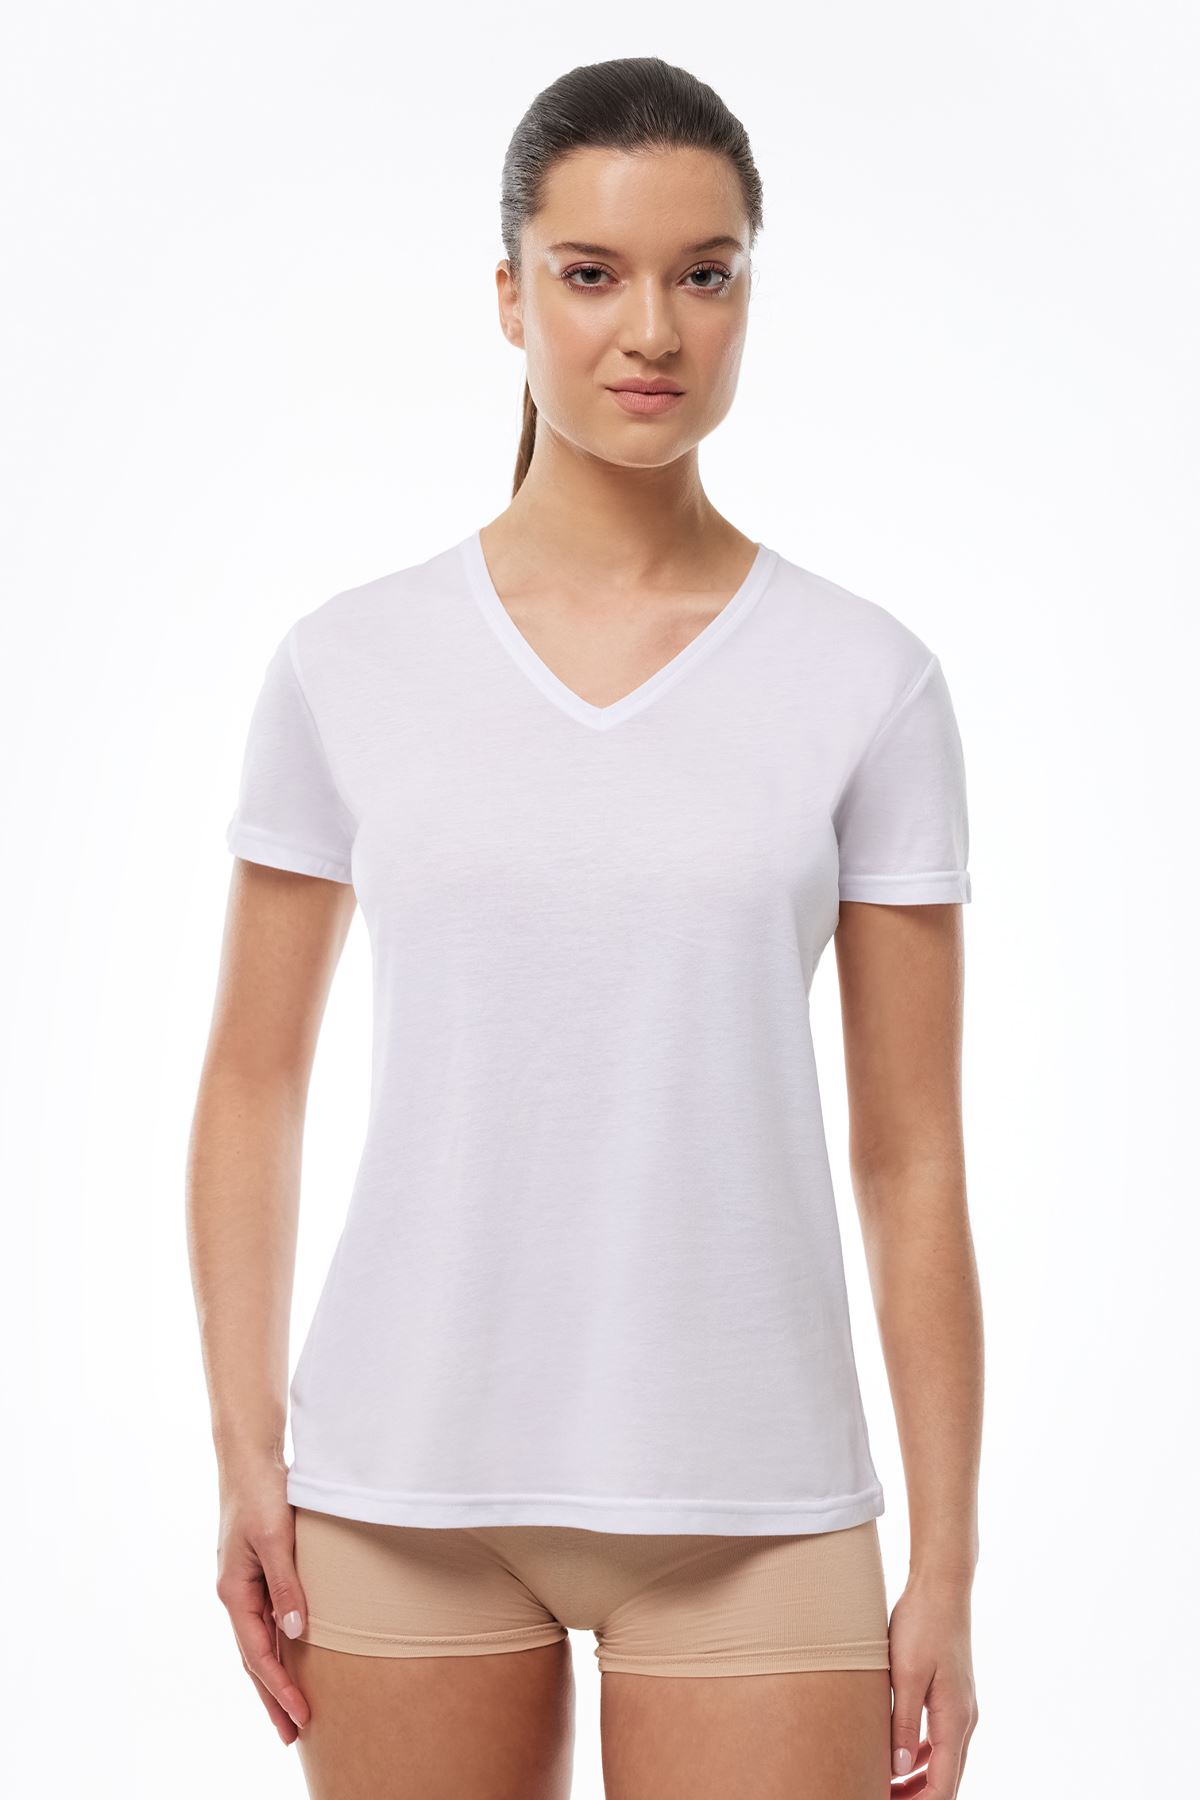 Kadın Beyaz 3 Lü V Yaka İnce Modal Yaz Serinliği Tshirt 3M7051